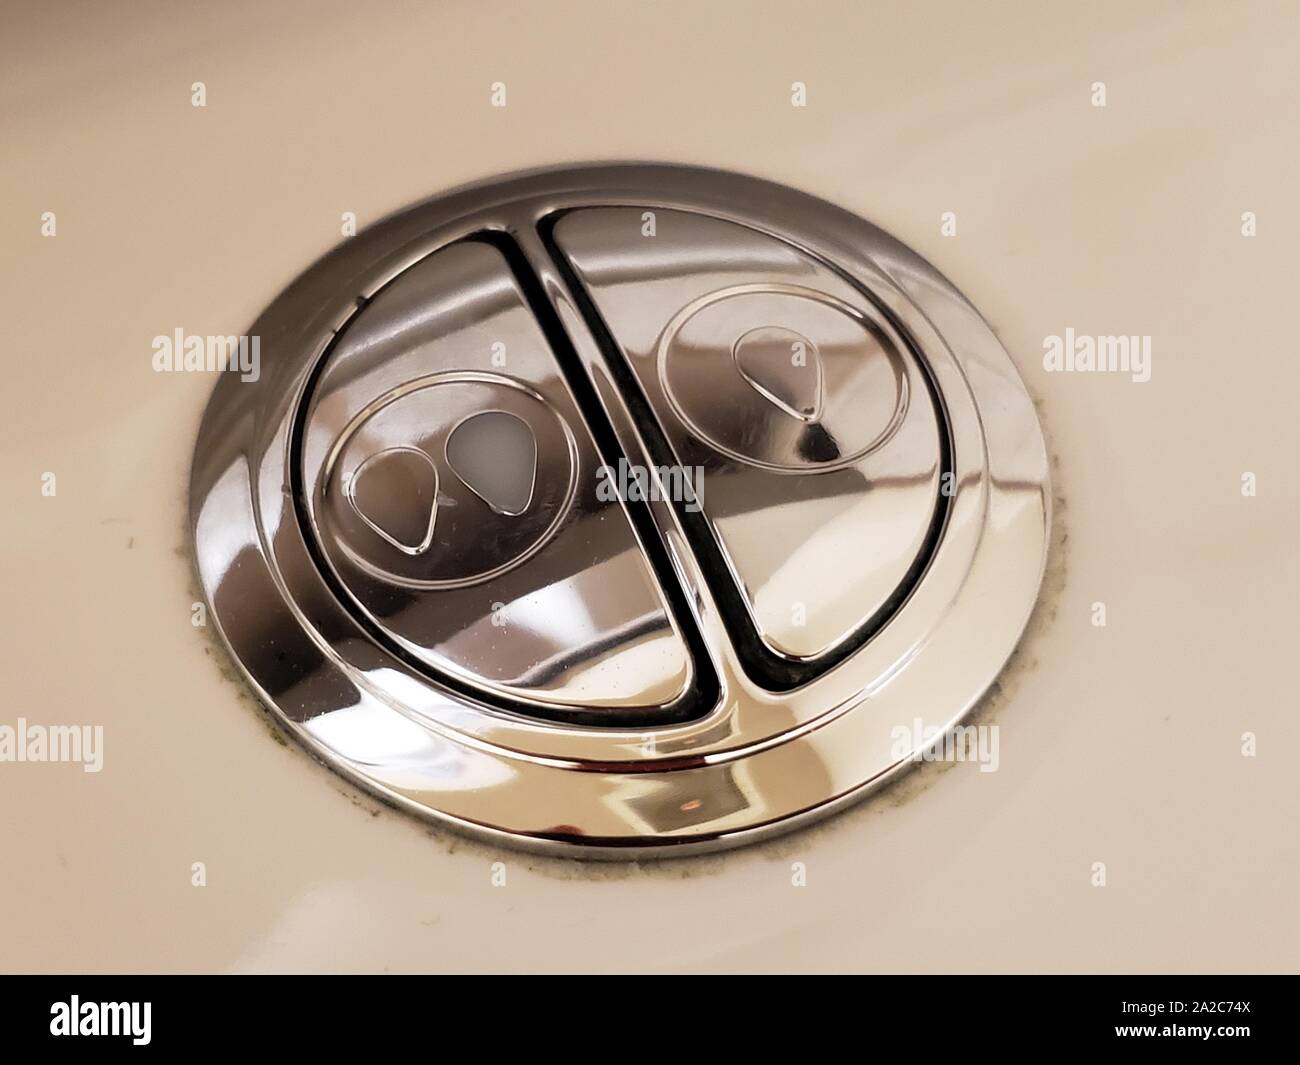 Primo piano dei pulsanti di un sistema di servizi igienici a doppio scarico, utilizzato per conservare l'acqua consentendo agli utenti di selezionare due diversi livelli di volume di scarico della toilette, il 2 agosto 2019. () Foto Stock